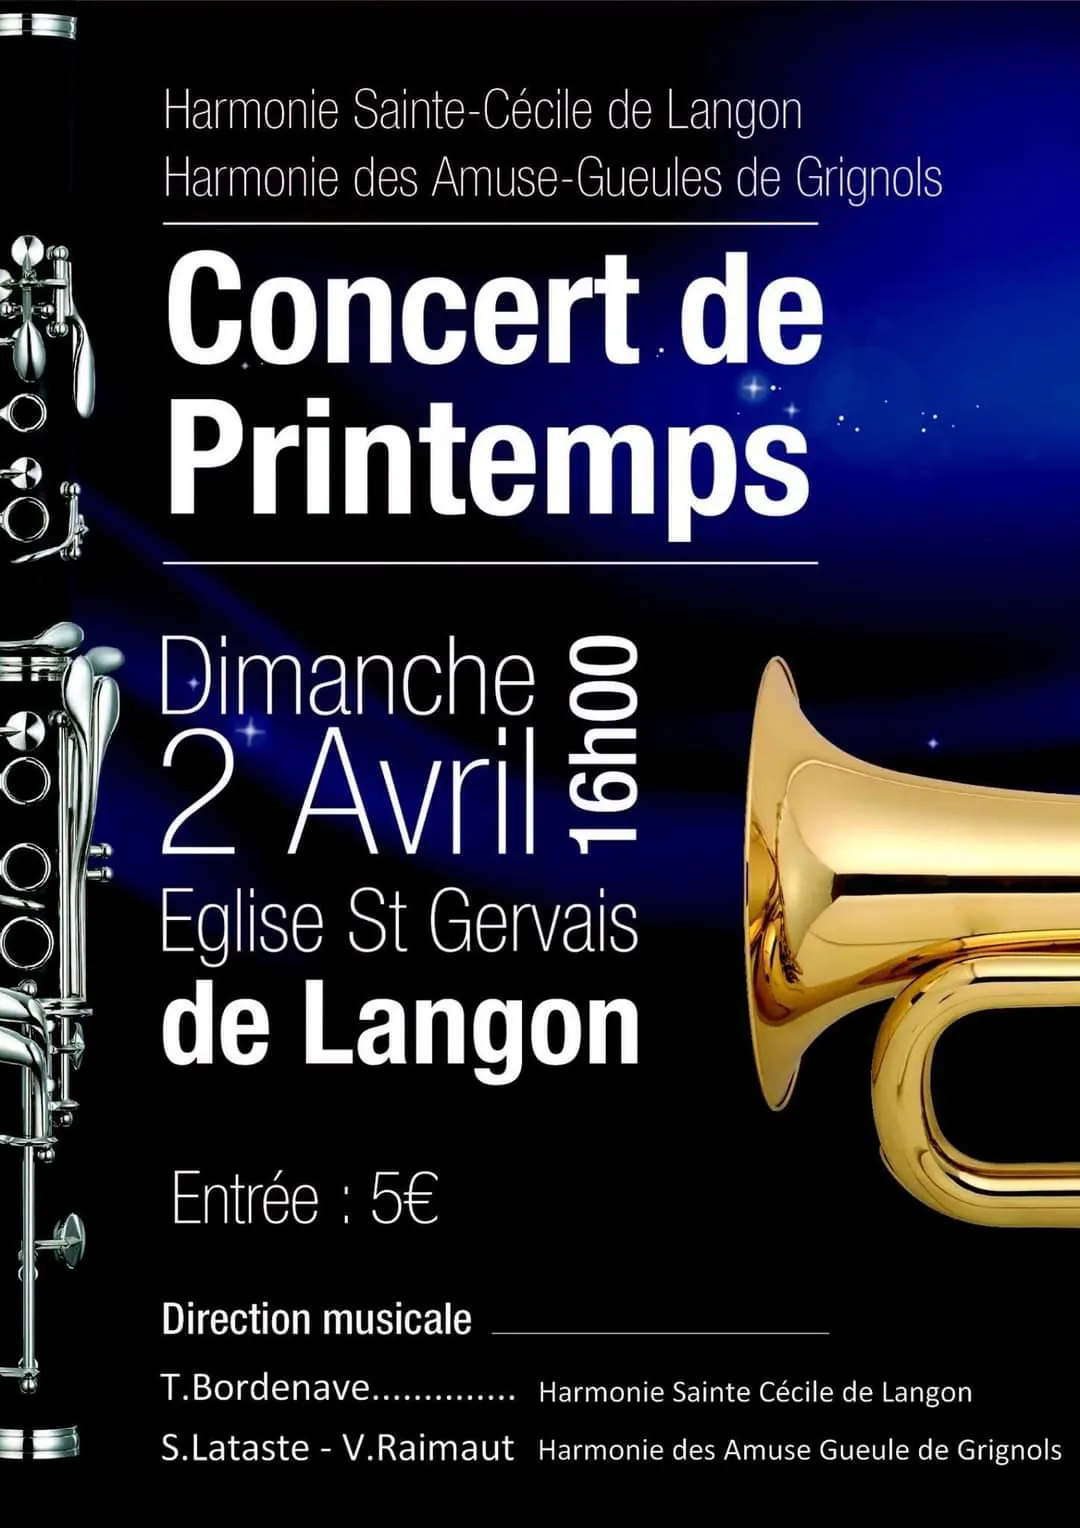 Flyer du concert de printemps en avril 2017 avec l'Harmonie des Amuse-Gueules de Grignols à l'Eglise de Langon.